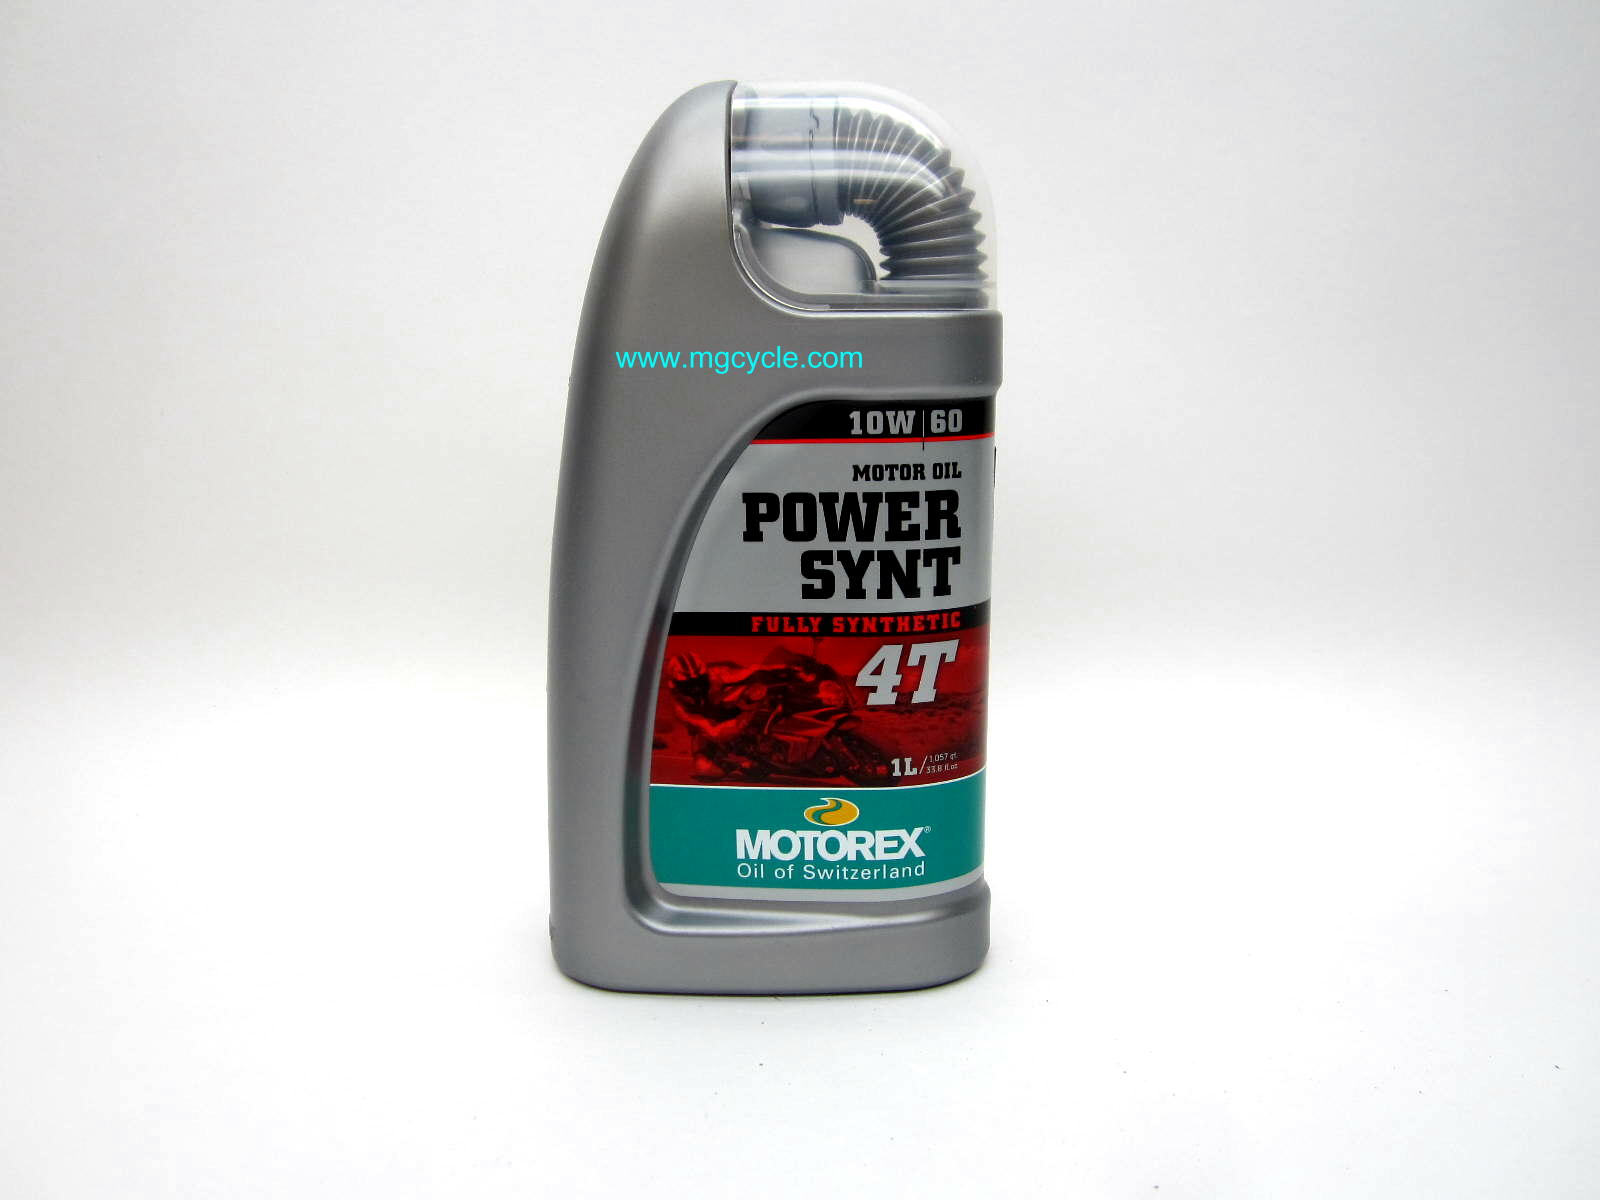 Motorex POWER SYNT 4T 10W60 synthetic motor oil, 1 liter